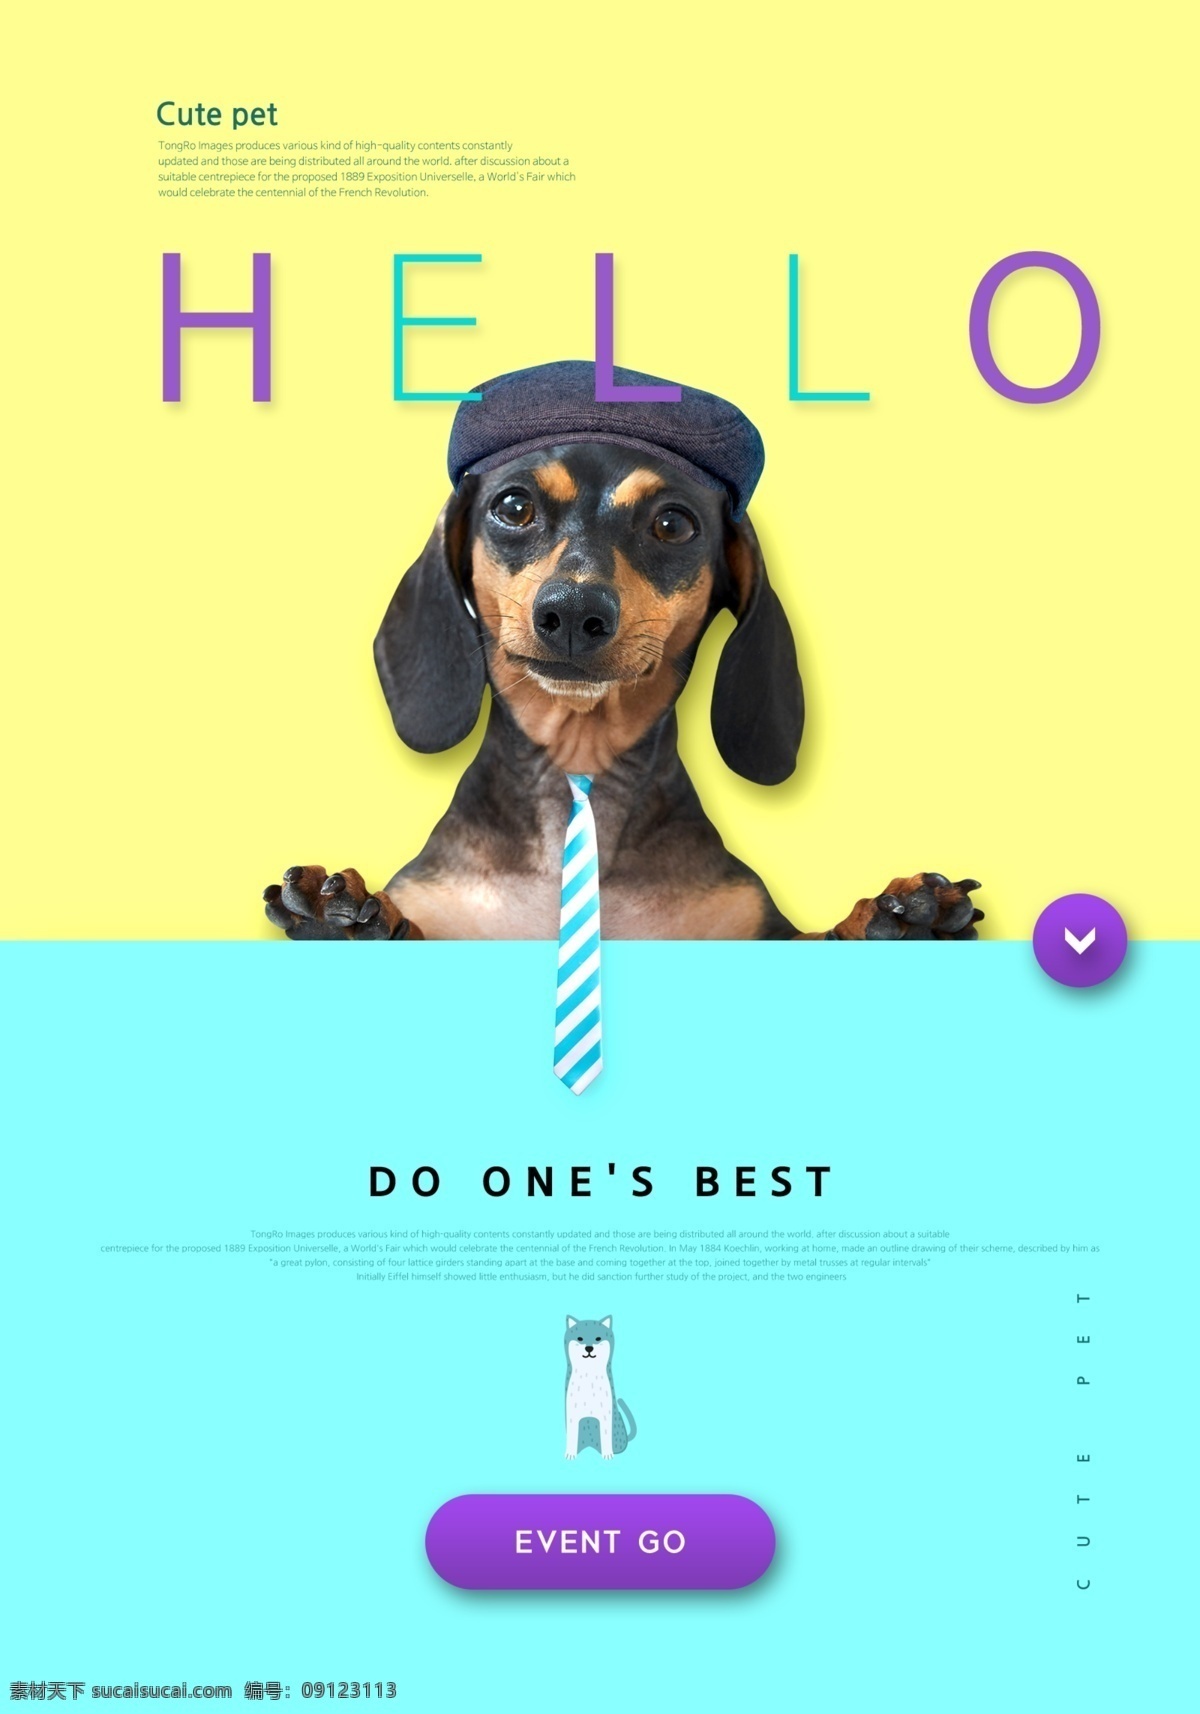 时尚 宠物狗 先生 海报 创意海报 促销 动物 可爱 宠物狗先生 商业海报 宠物 宠物素材 小狗 宠物商业海报